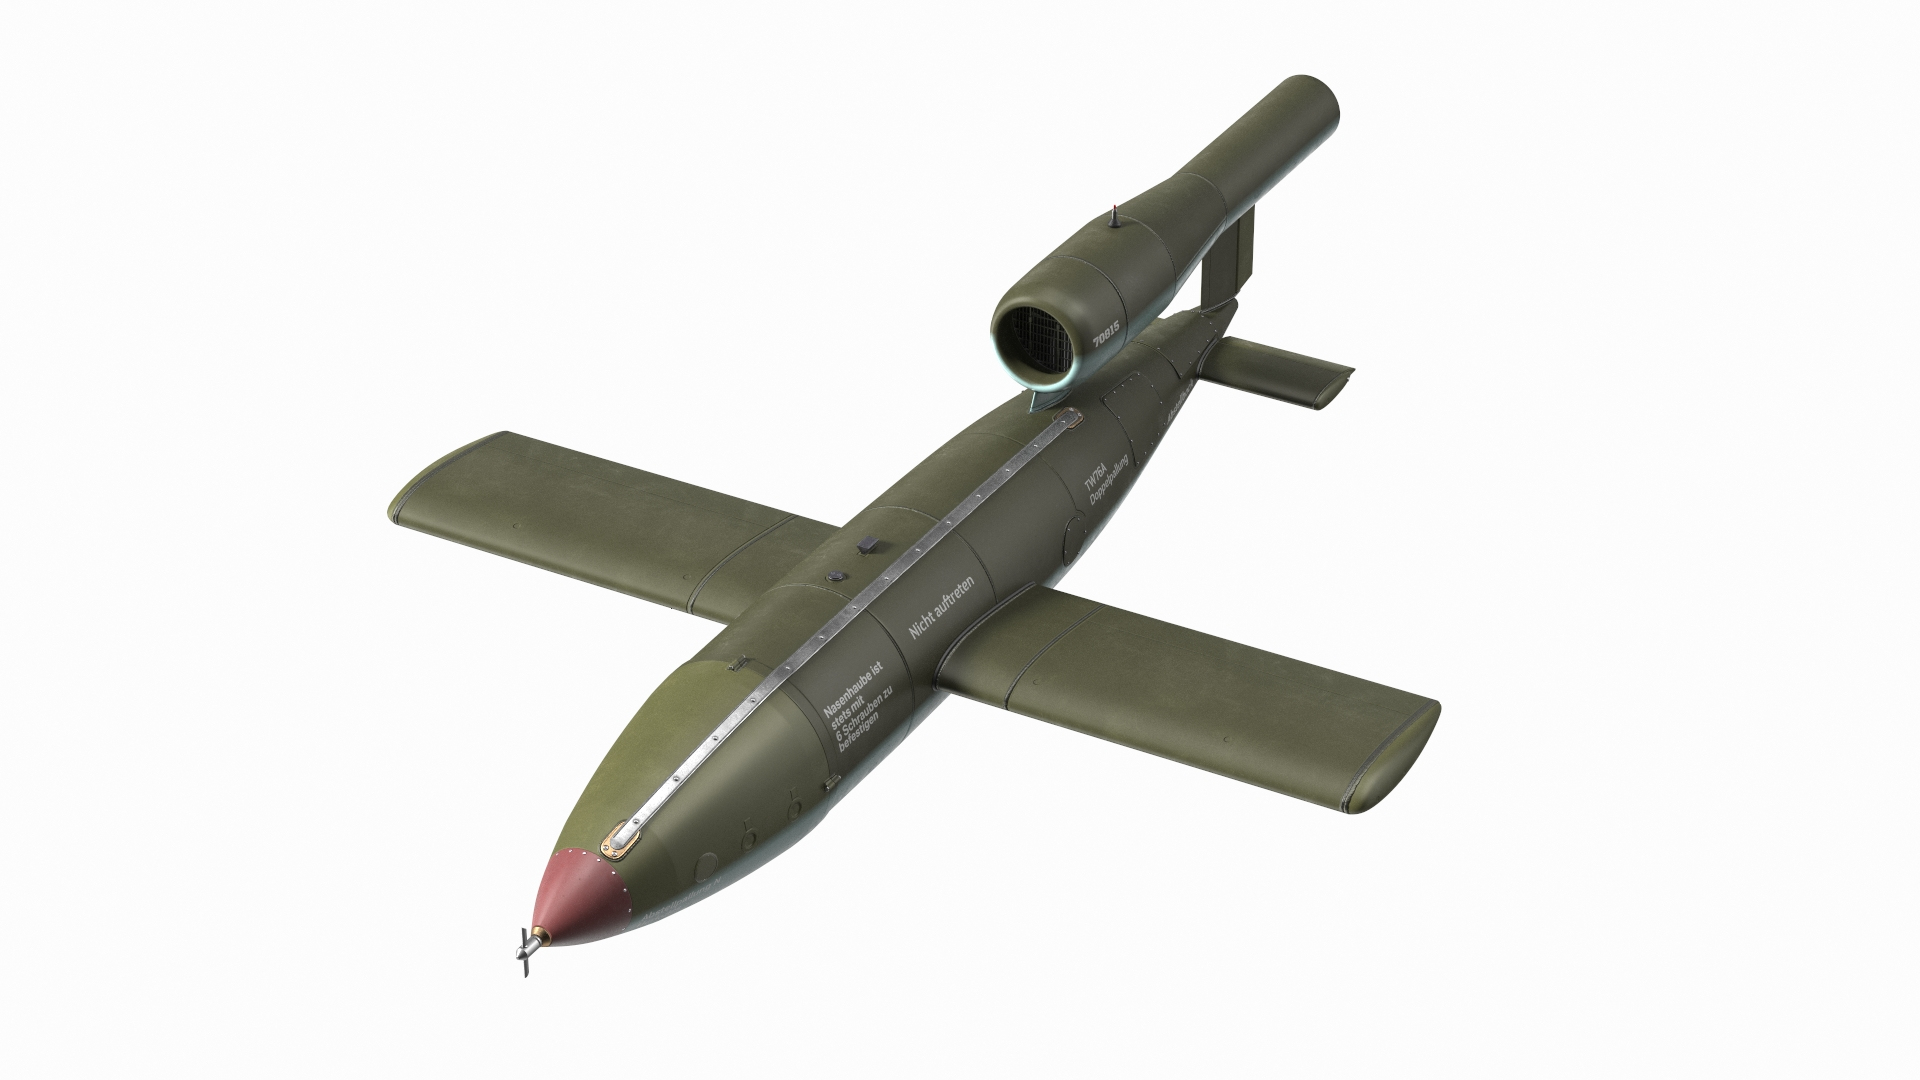 German V1 Flying Bomb Buzz Bomb model https://p.turbosquid.com/ts-thumb/1N/r0I9tk/IZ/german_v1_flying_bomb_buzz_bomb_360/jpg/1628339174/1920x1080/turn_fit_q99/484729482a3f72a2ec5fb53a4292f05831c30420/german_v1_flying_bomb_buzz_bomb_360-1.jpg